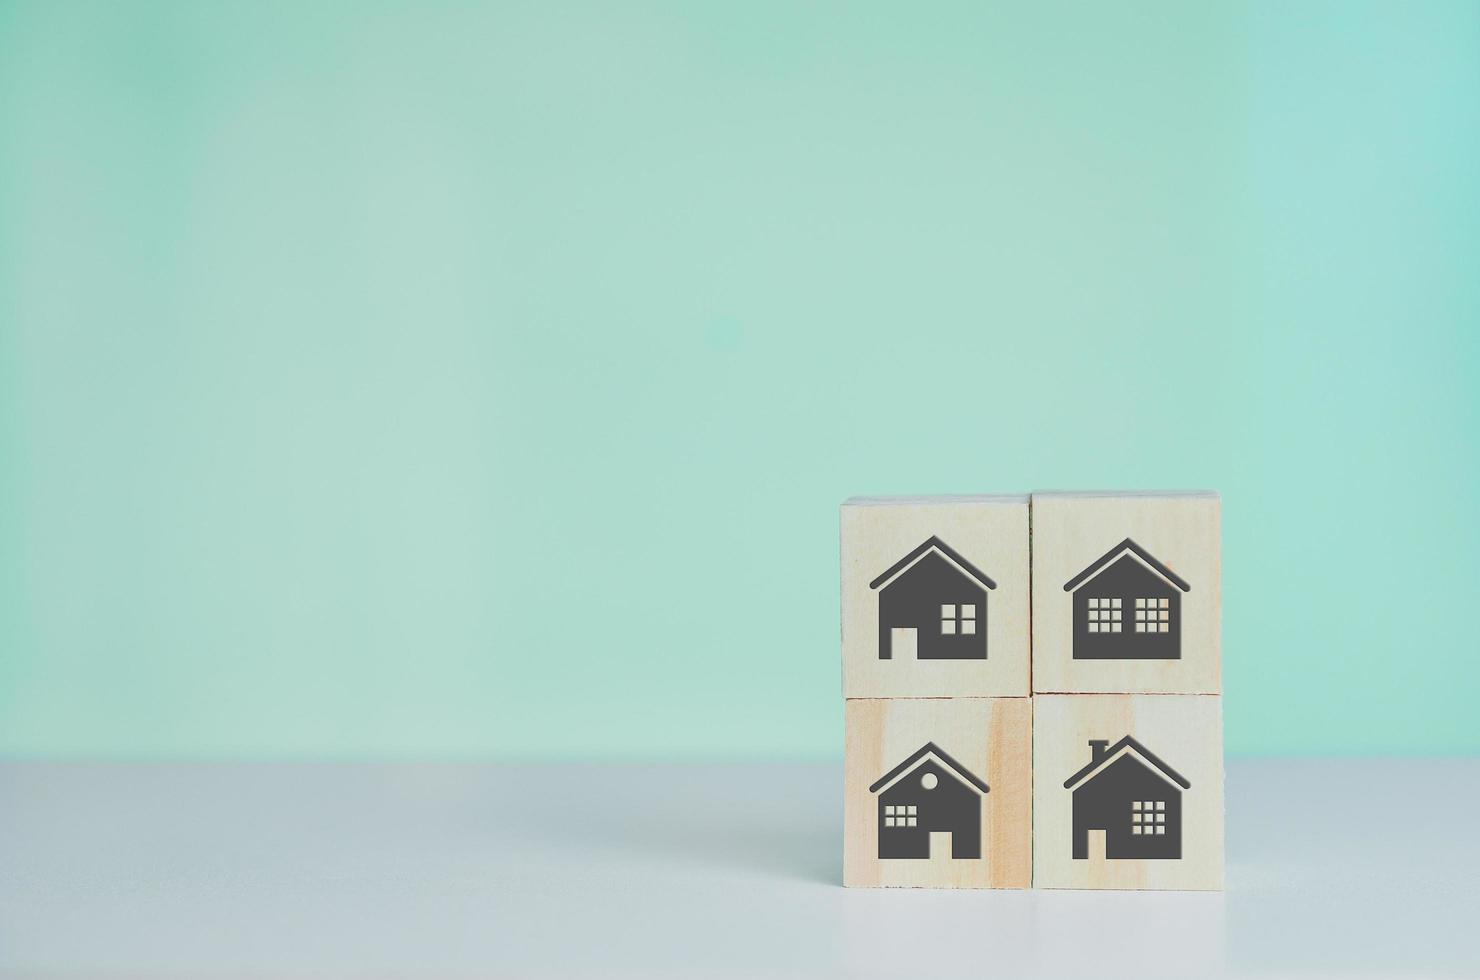 cubos de madeira com venda e aluguel de casas ou símbolo on-line de propriedade de conceito imobiliário no espaço de fundo e cópia. foto